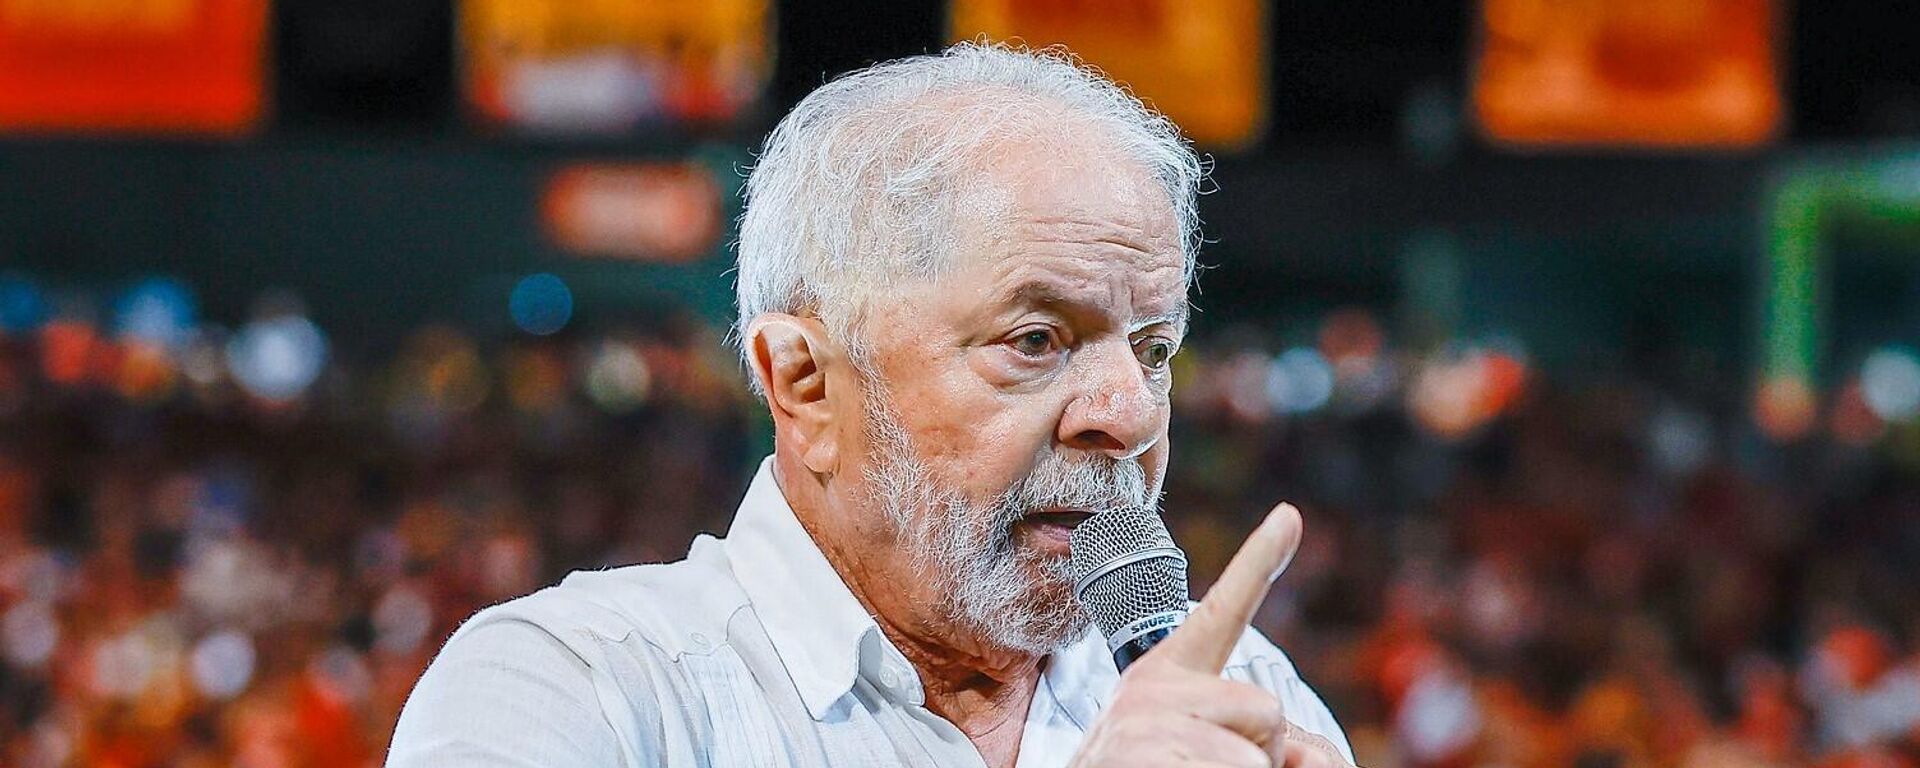 O ex-presidente Luiz Inácio Lula da Silva (PT) durante ato em Pernambuco (foto de arquivo) - Sputnik Brasil, 1920, 22.08.2022